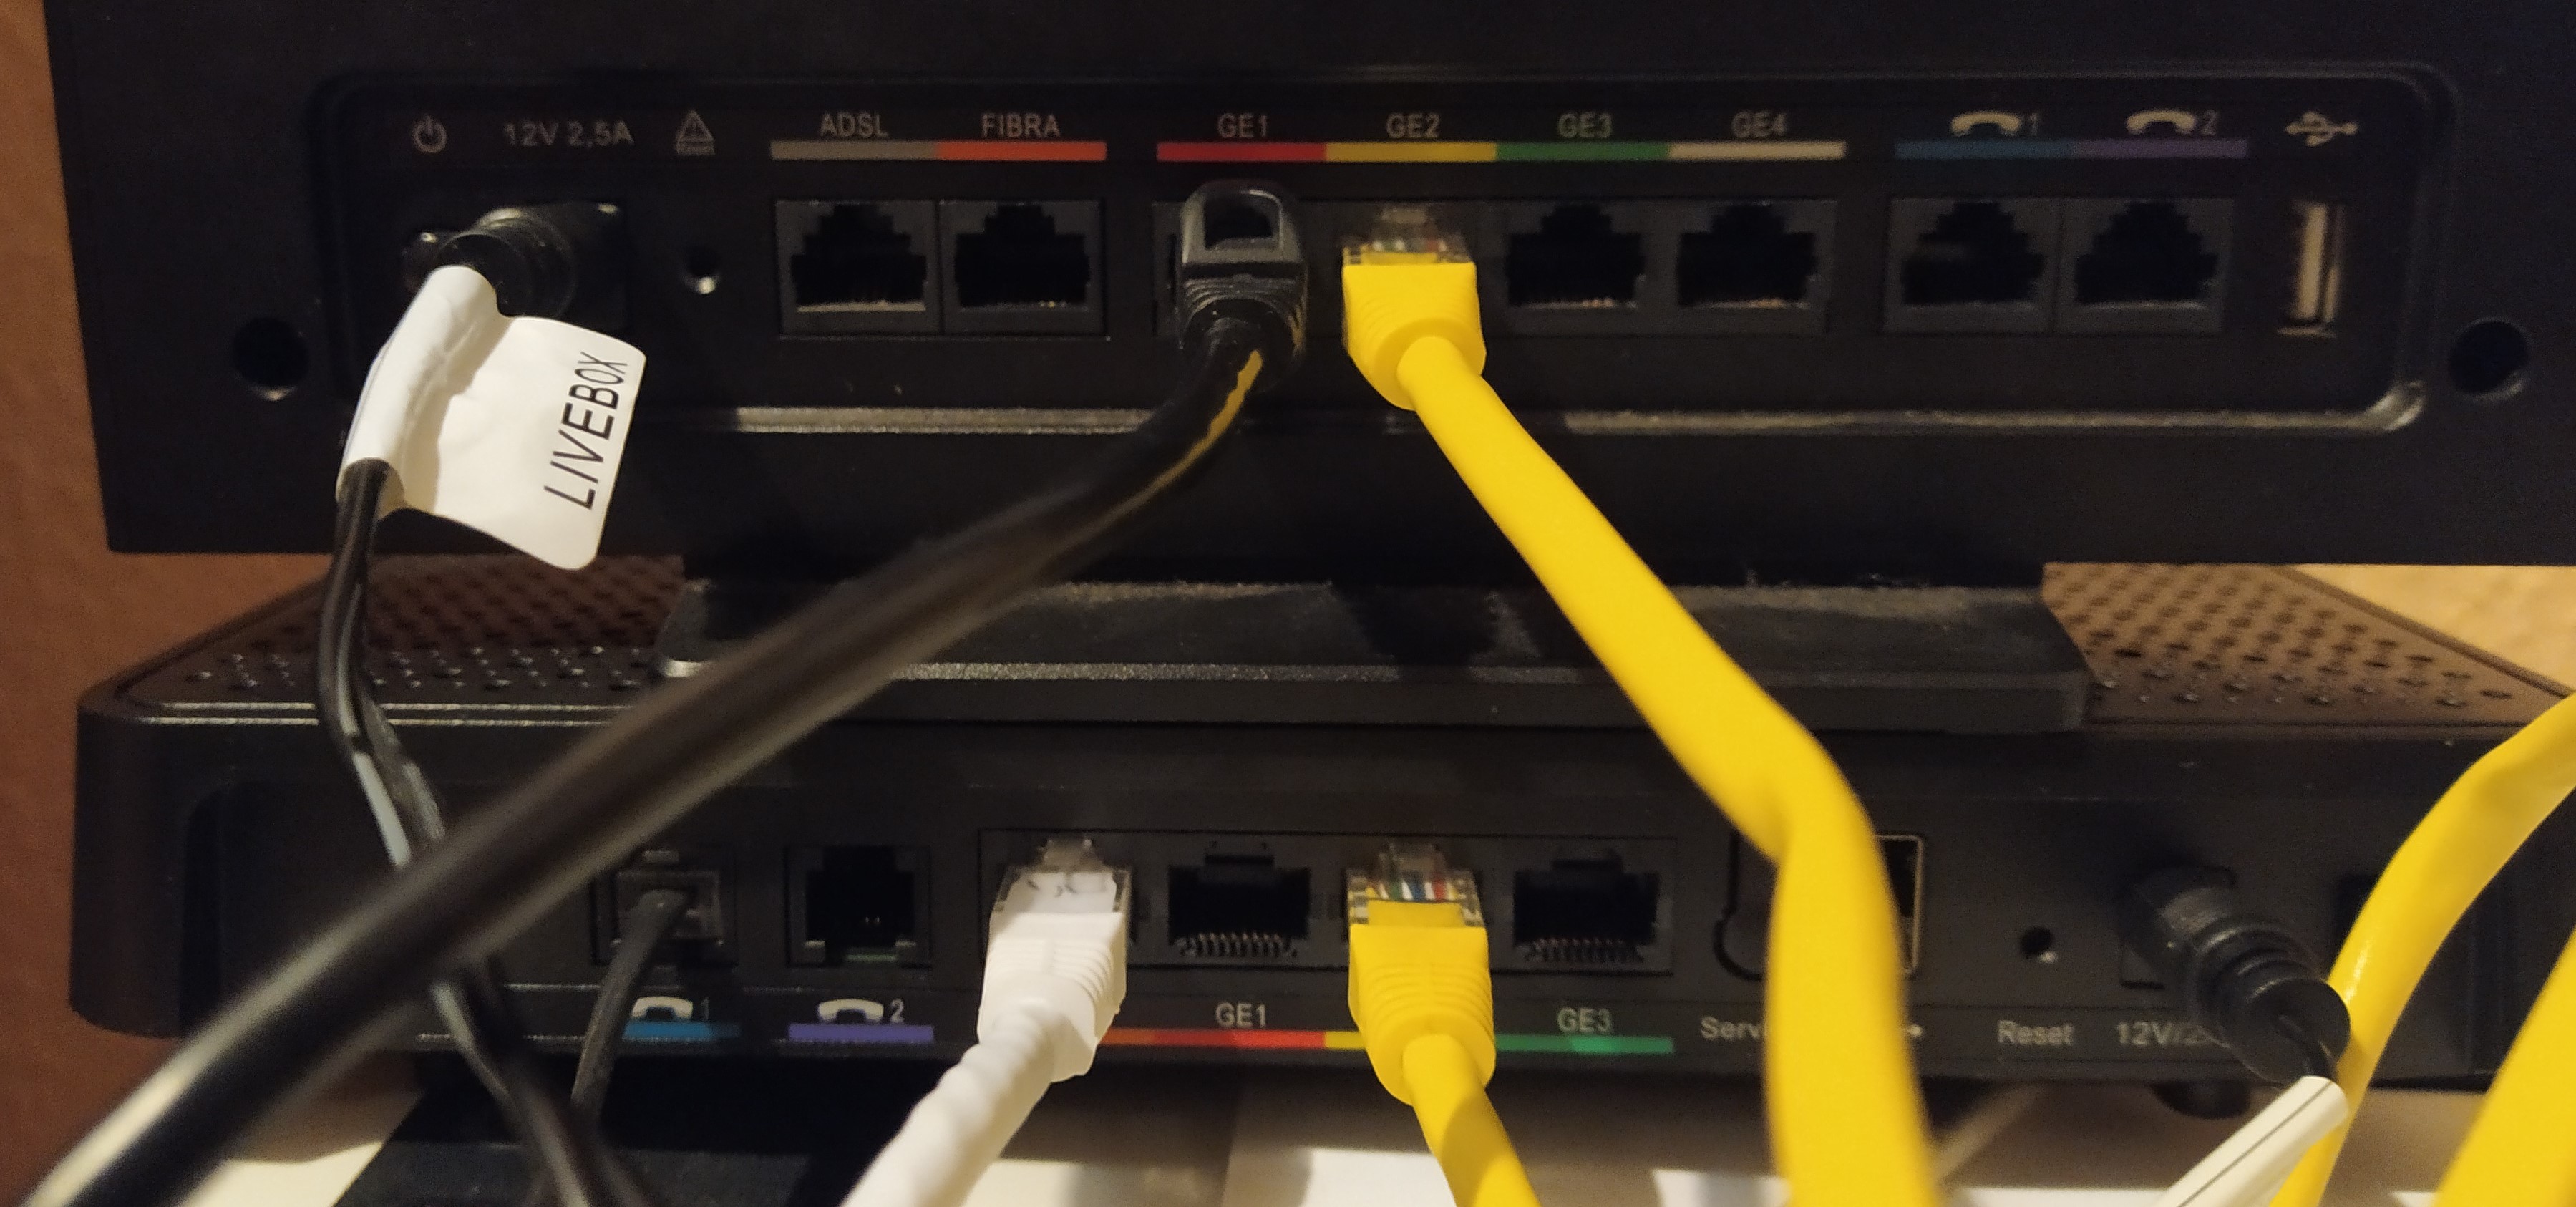 Conexión fallida o lenta entre Router LiveBox Fibra y otro ambos Gbit - Orange